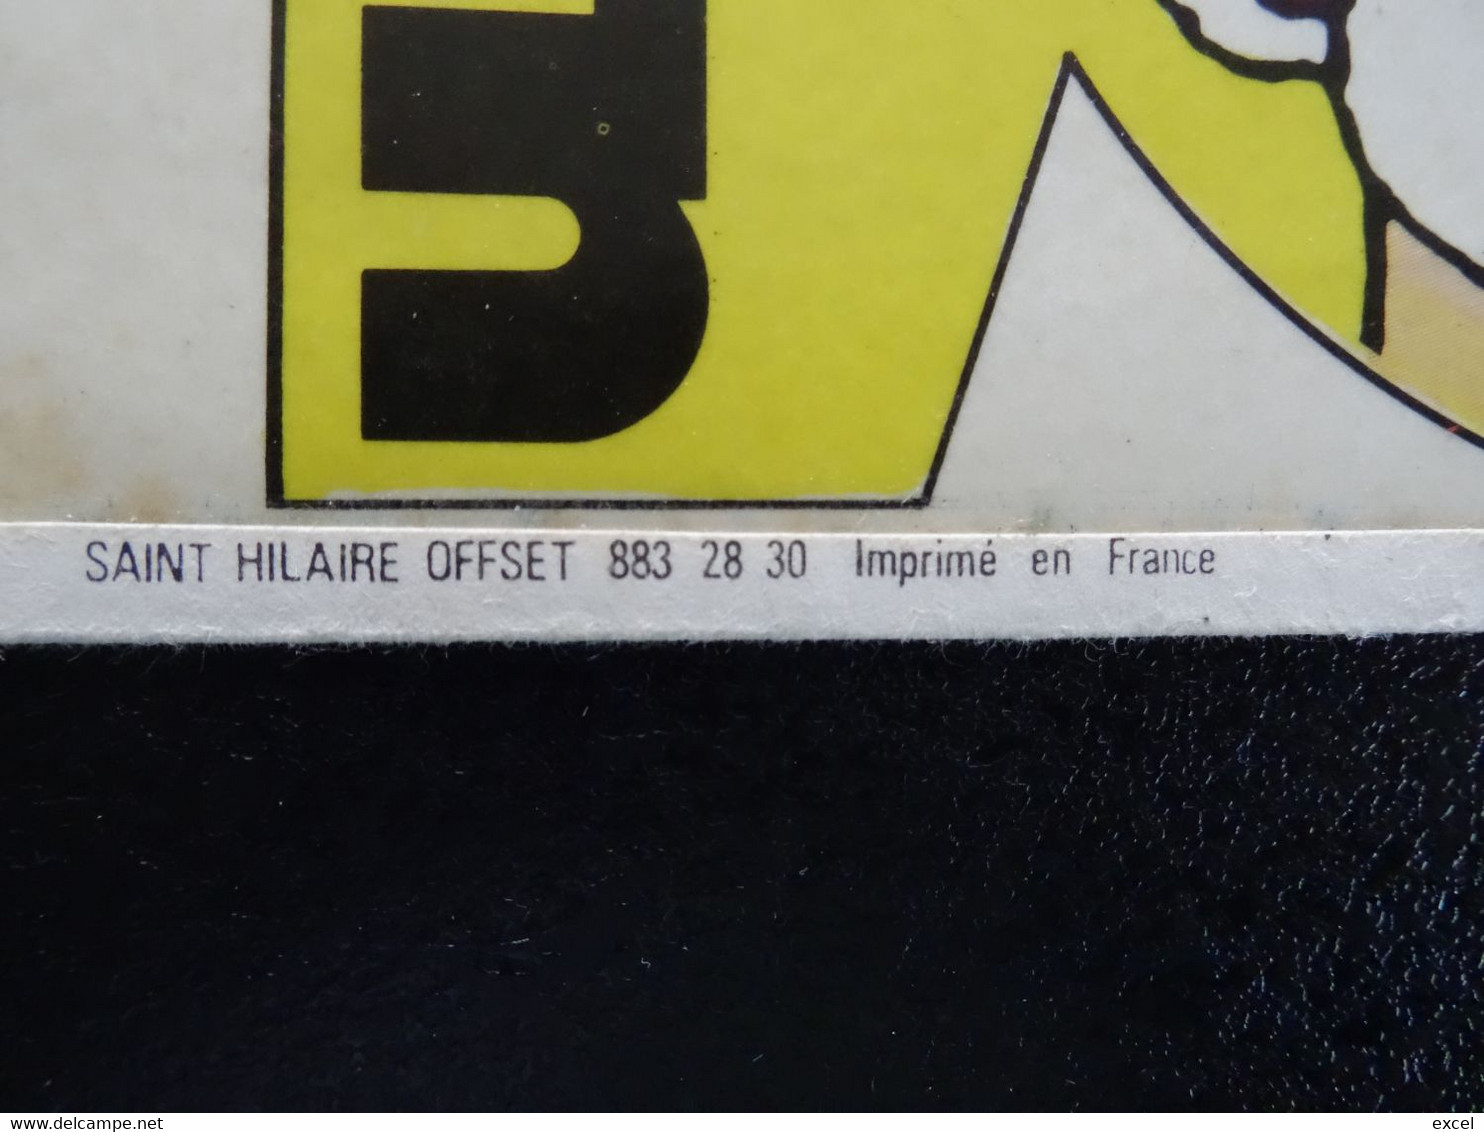 Autocollant Tintin - Supplément Journal Tintin N°21 1973 - Zelfklevers